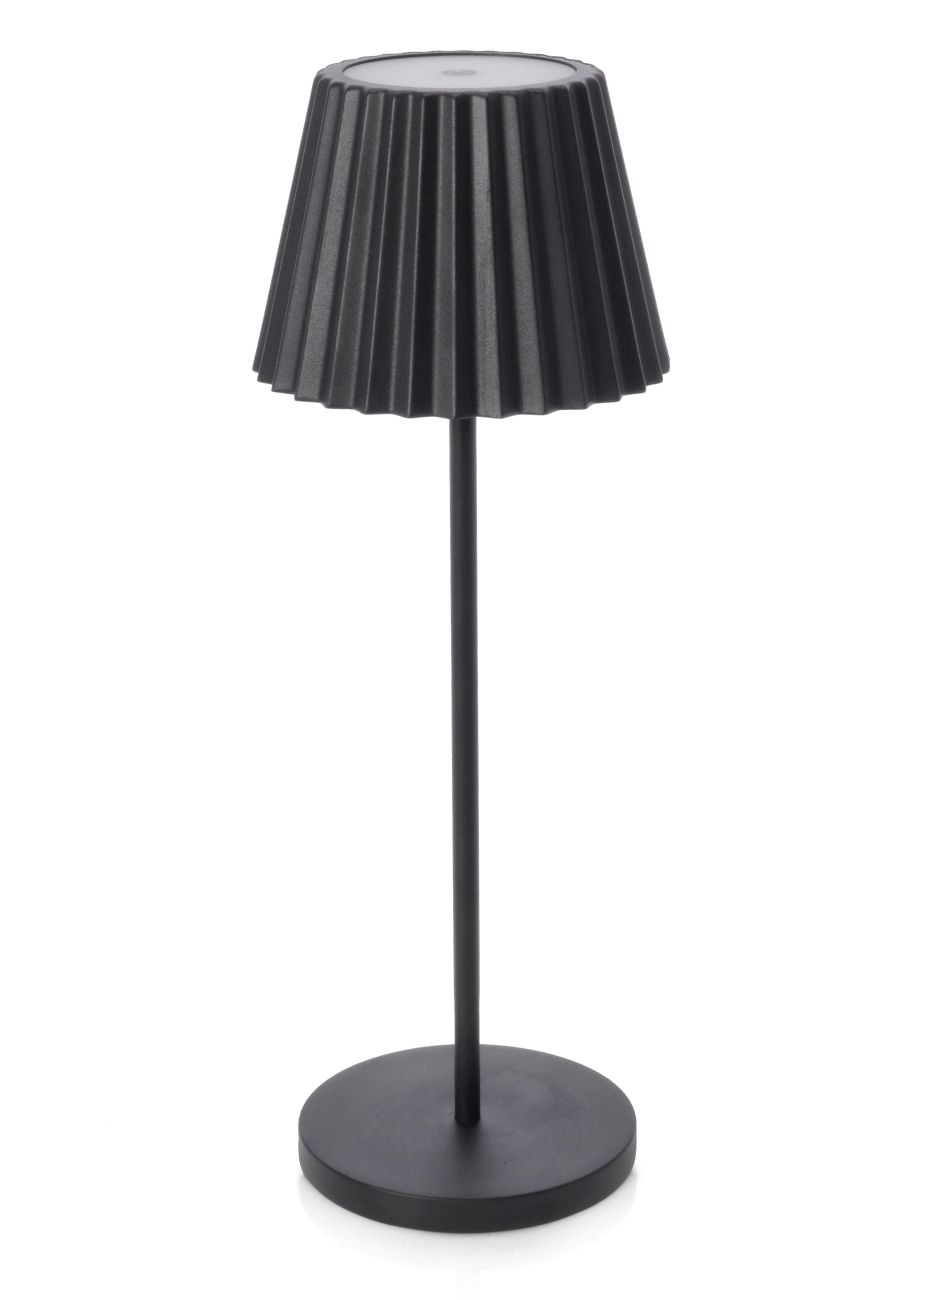 Die Outdoor Lampe Artika überzeugt mit ihrem modernen Design. Gefertigt wurde sie aus Metall, welches einen schwarzen Farbton besitzt. Die Lampe besitzt eine Höhe von 36 cm.